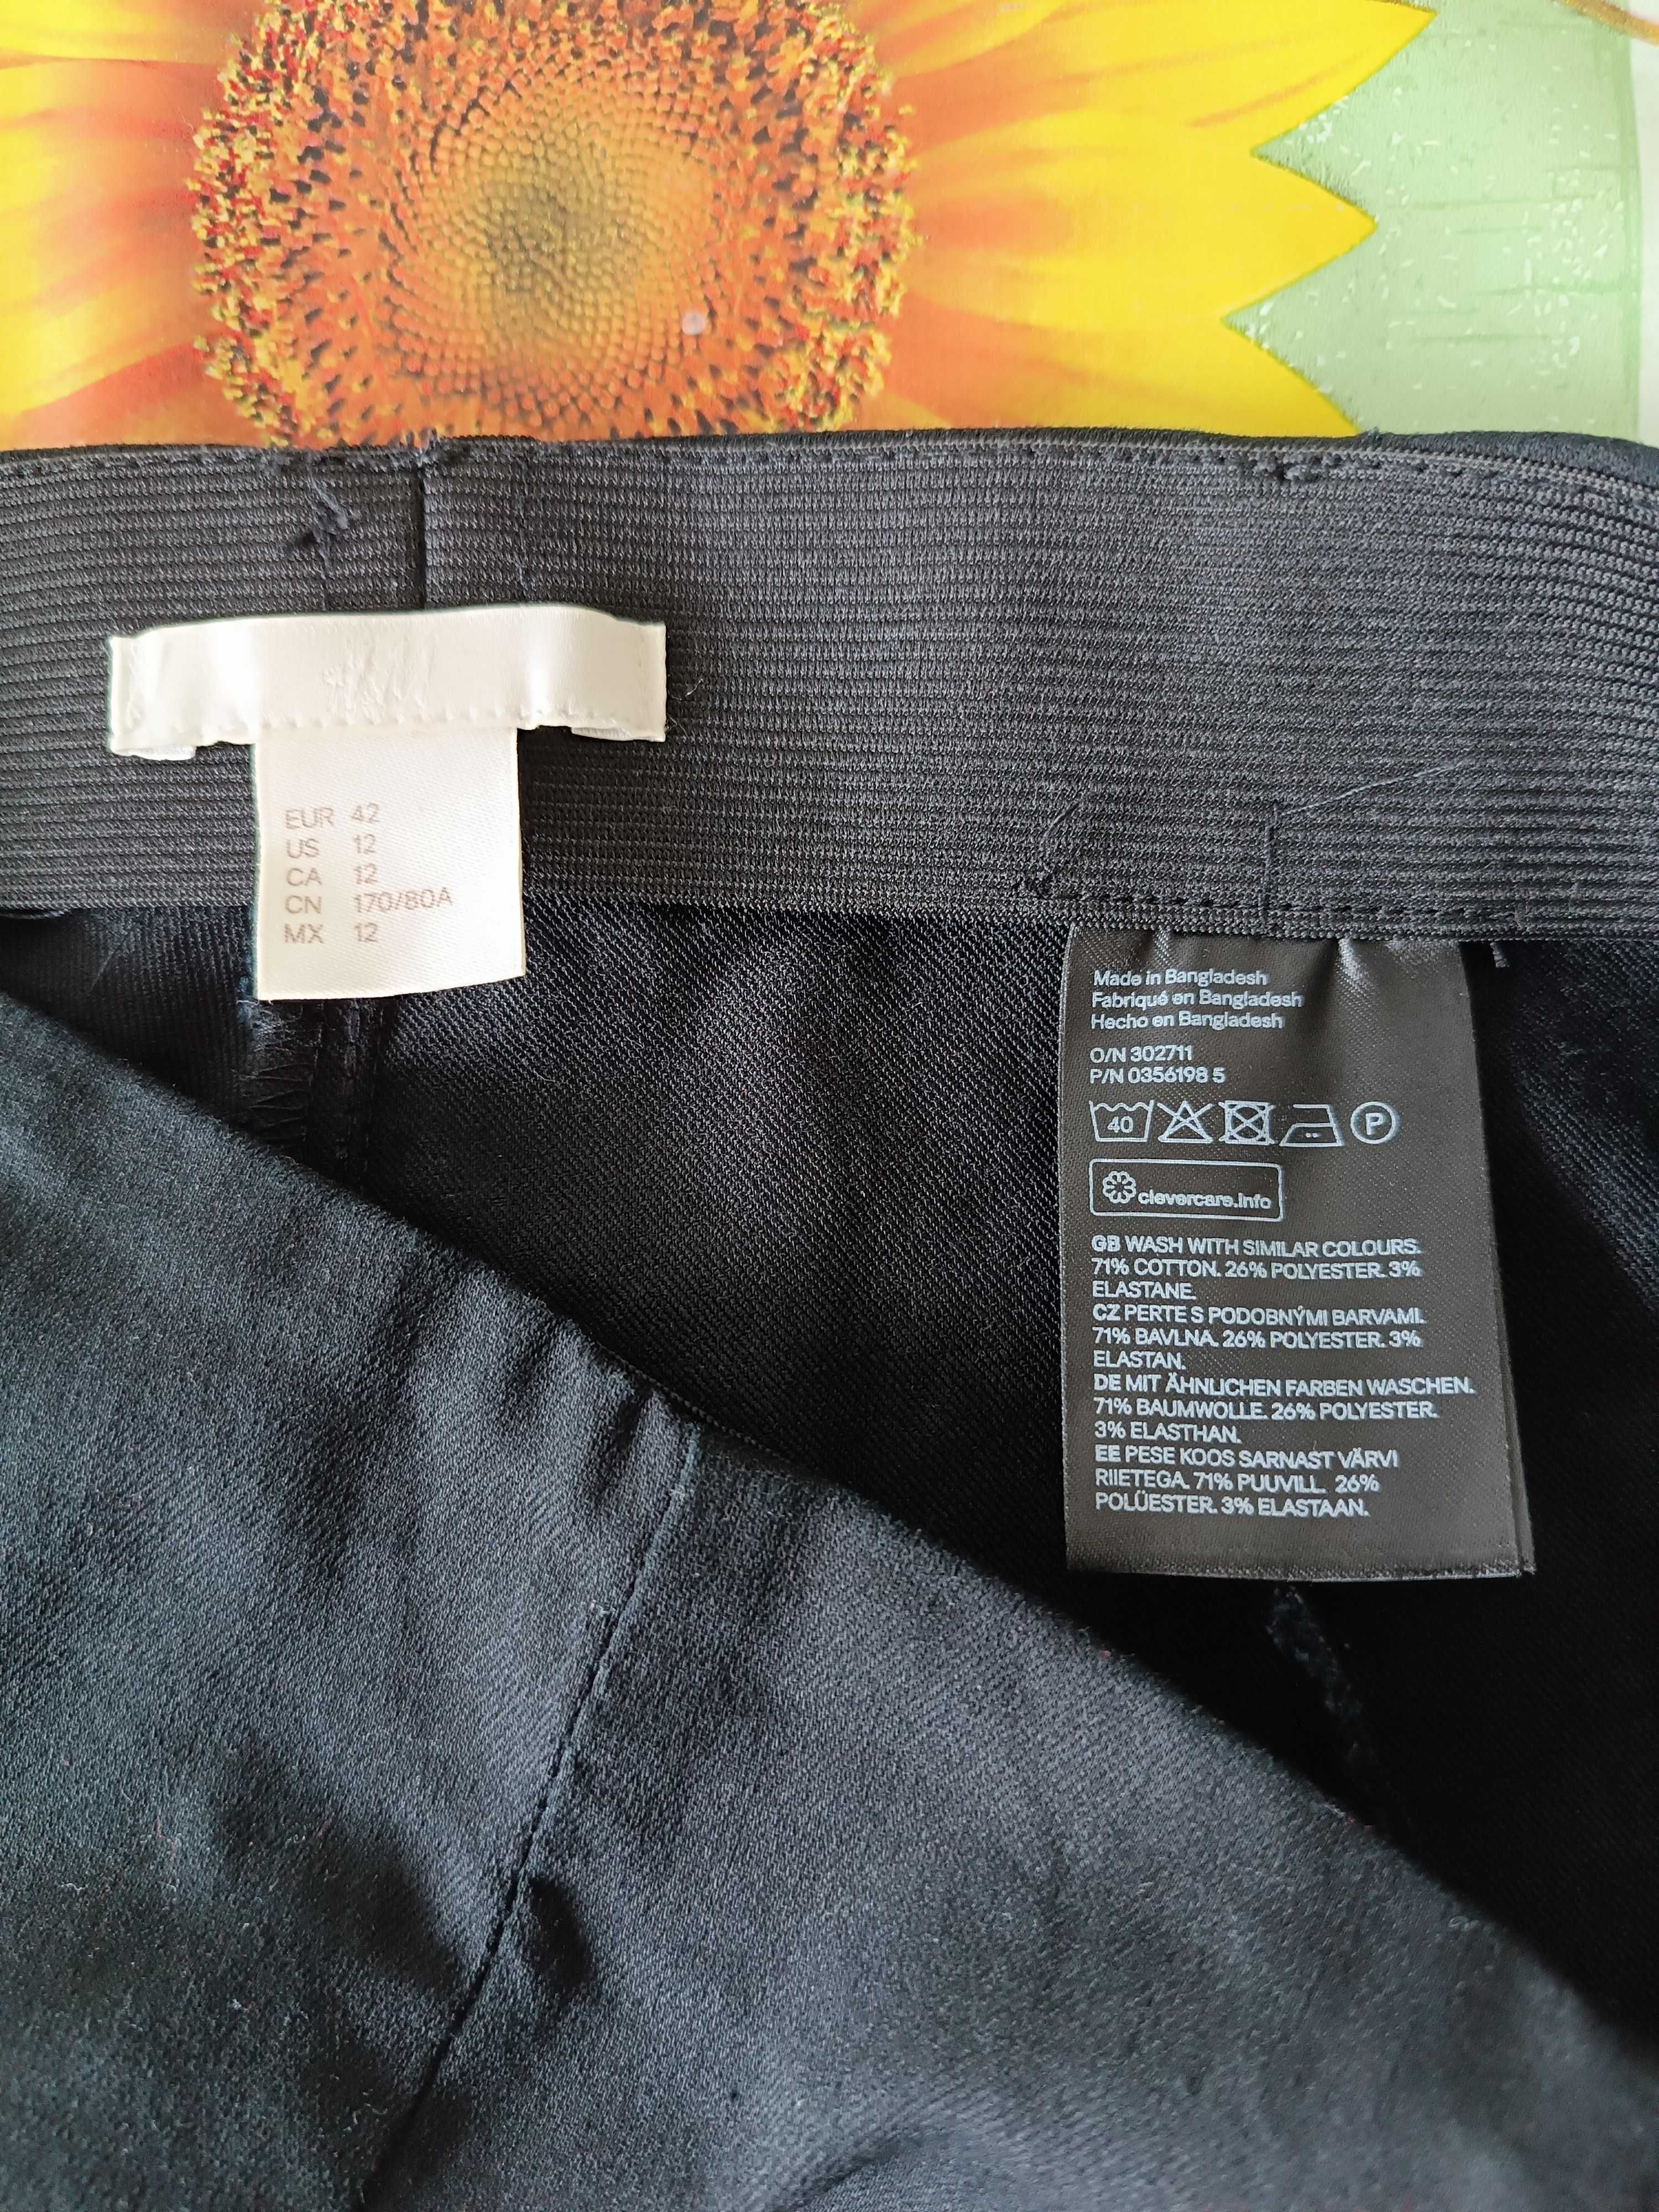 р 14 48-50 стильні базові чорні штани-штани вузькі скіні стрейчеві H&M